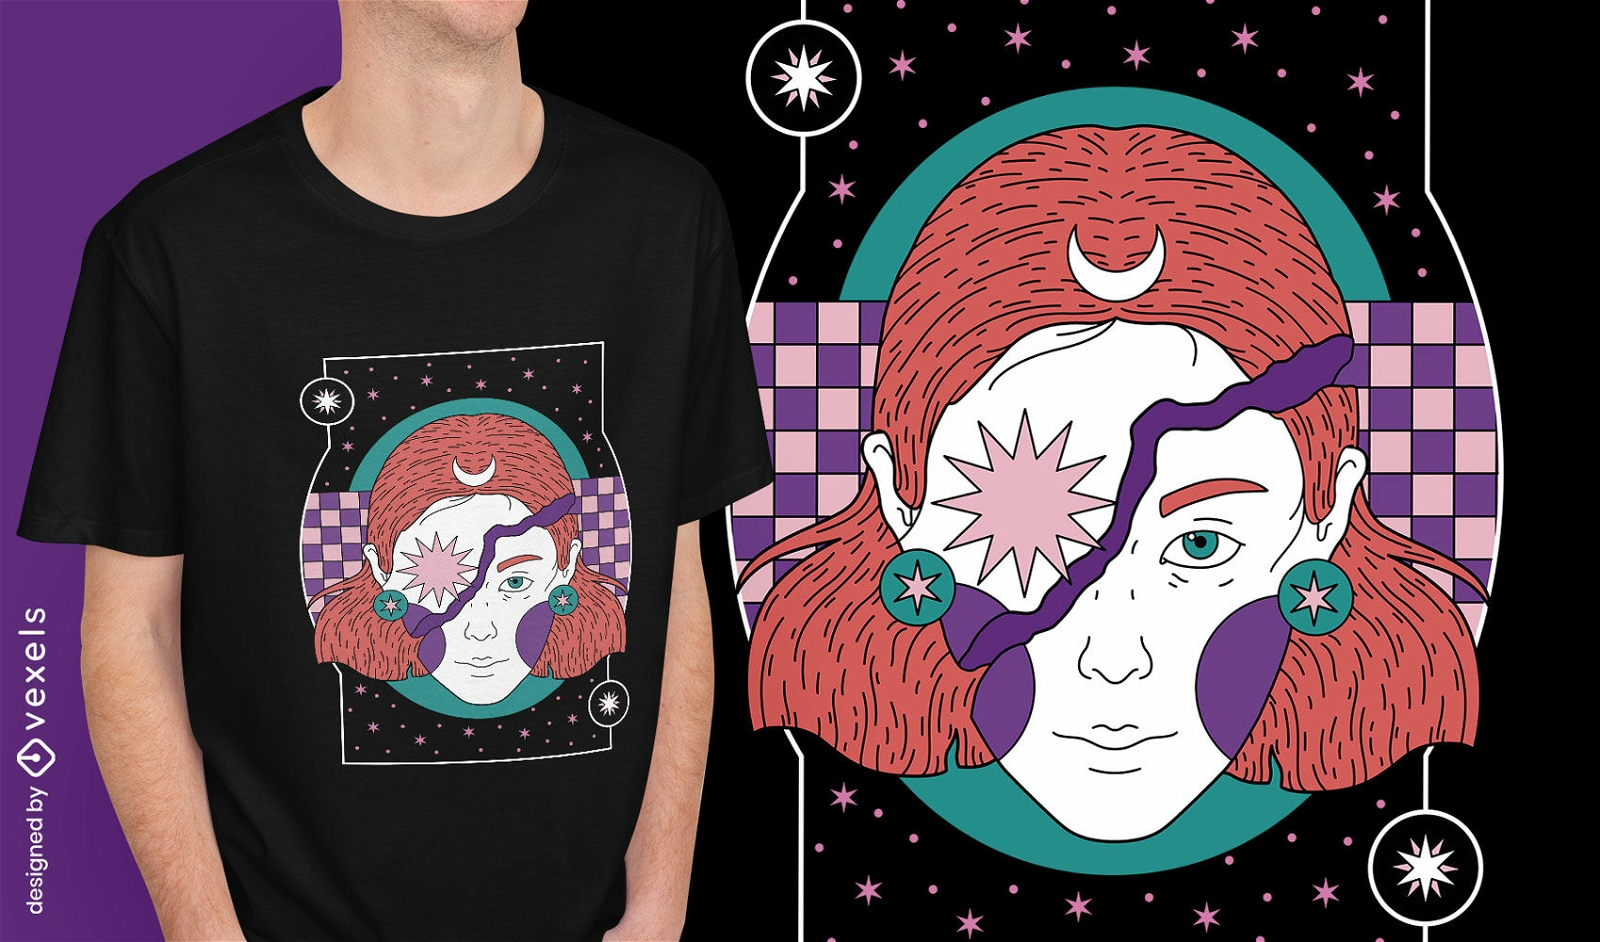 Mystisches Nachtfrauen-T-Shirt Design